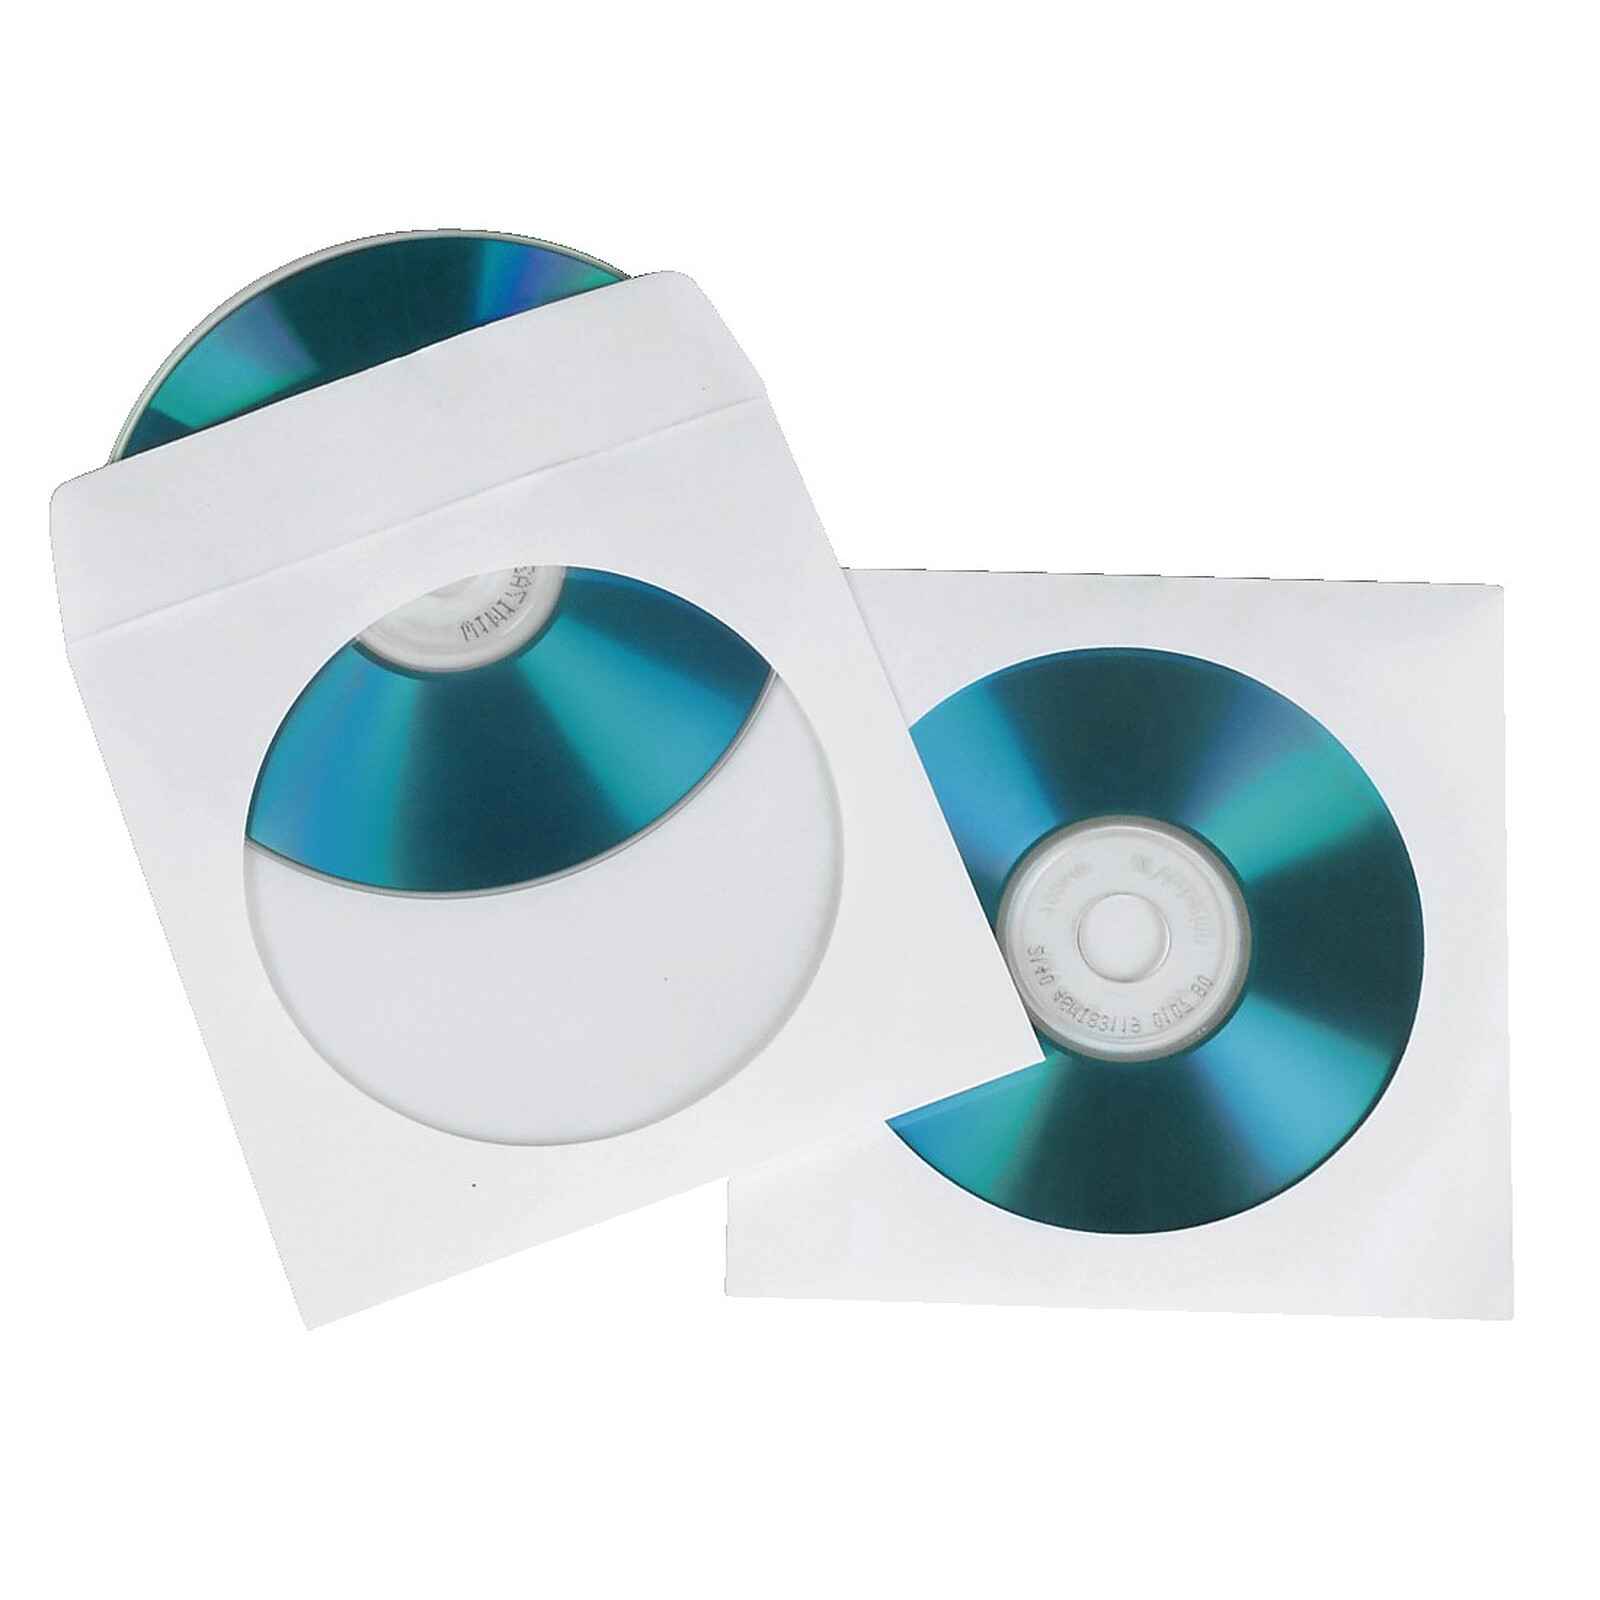 Hama Lot de 100 Pochettes pour CD/DVD - Pochette CD / DVD - Garantie 3 ans  LDLC